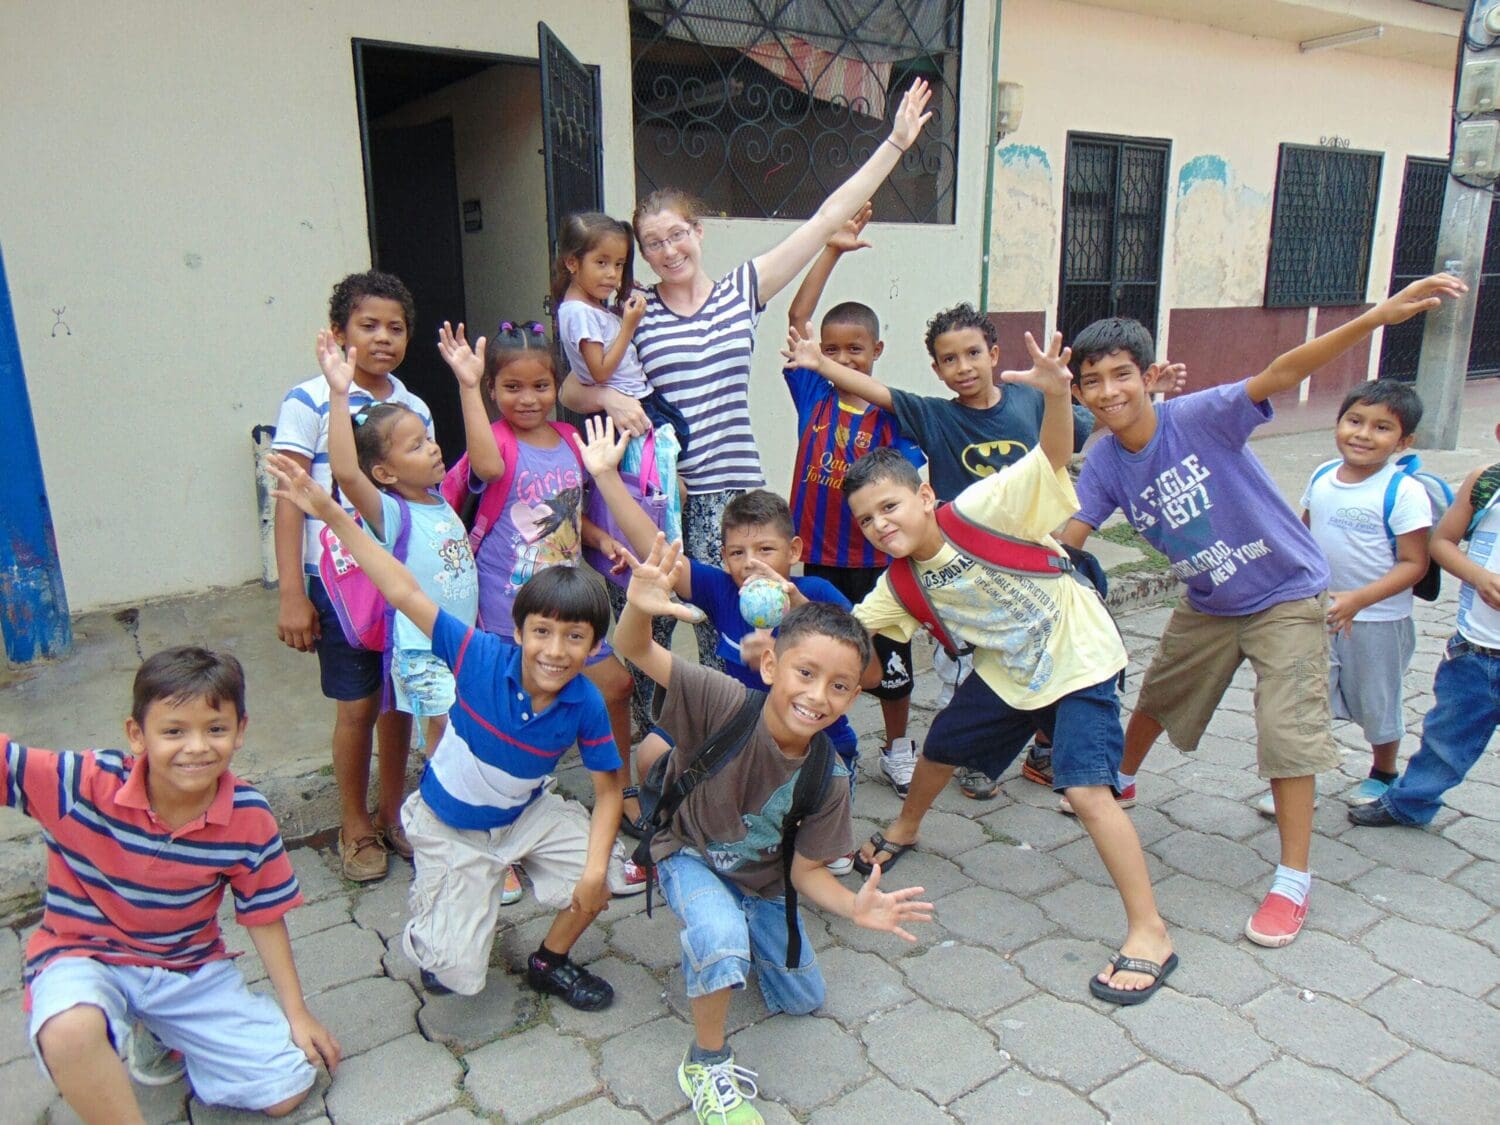 Volunteering with Children in Costa Rica